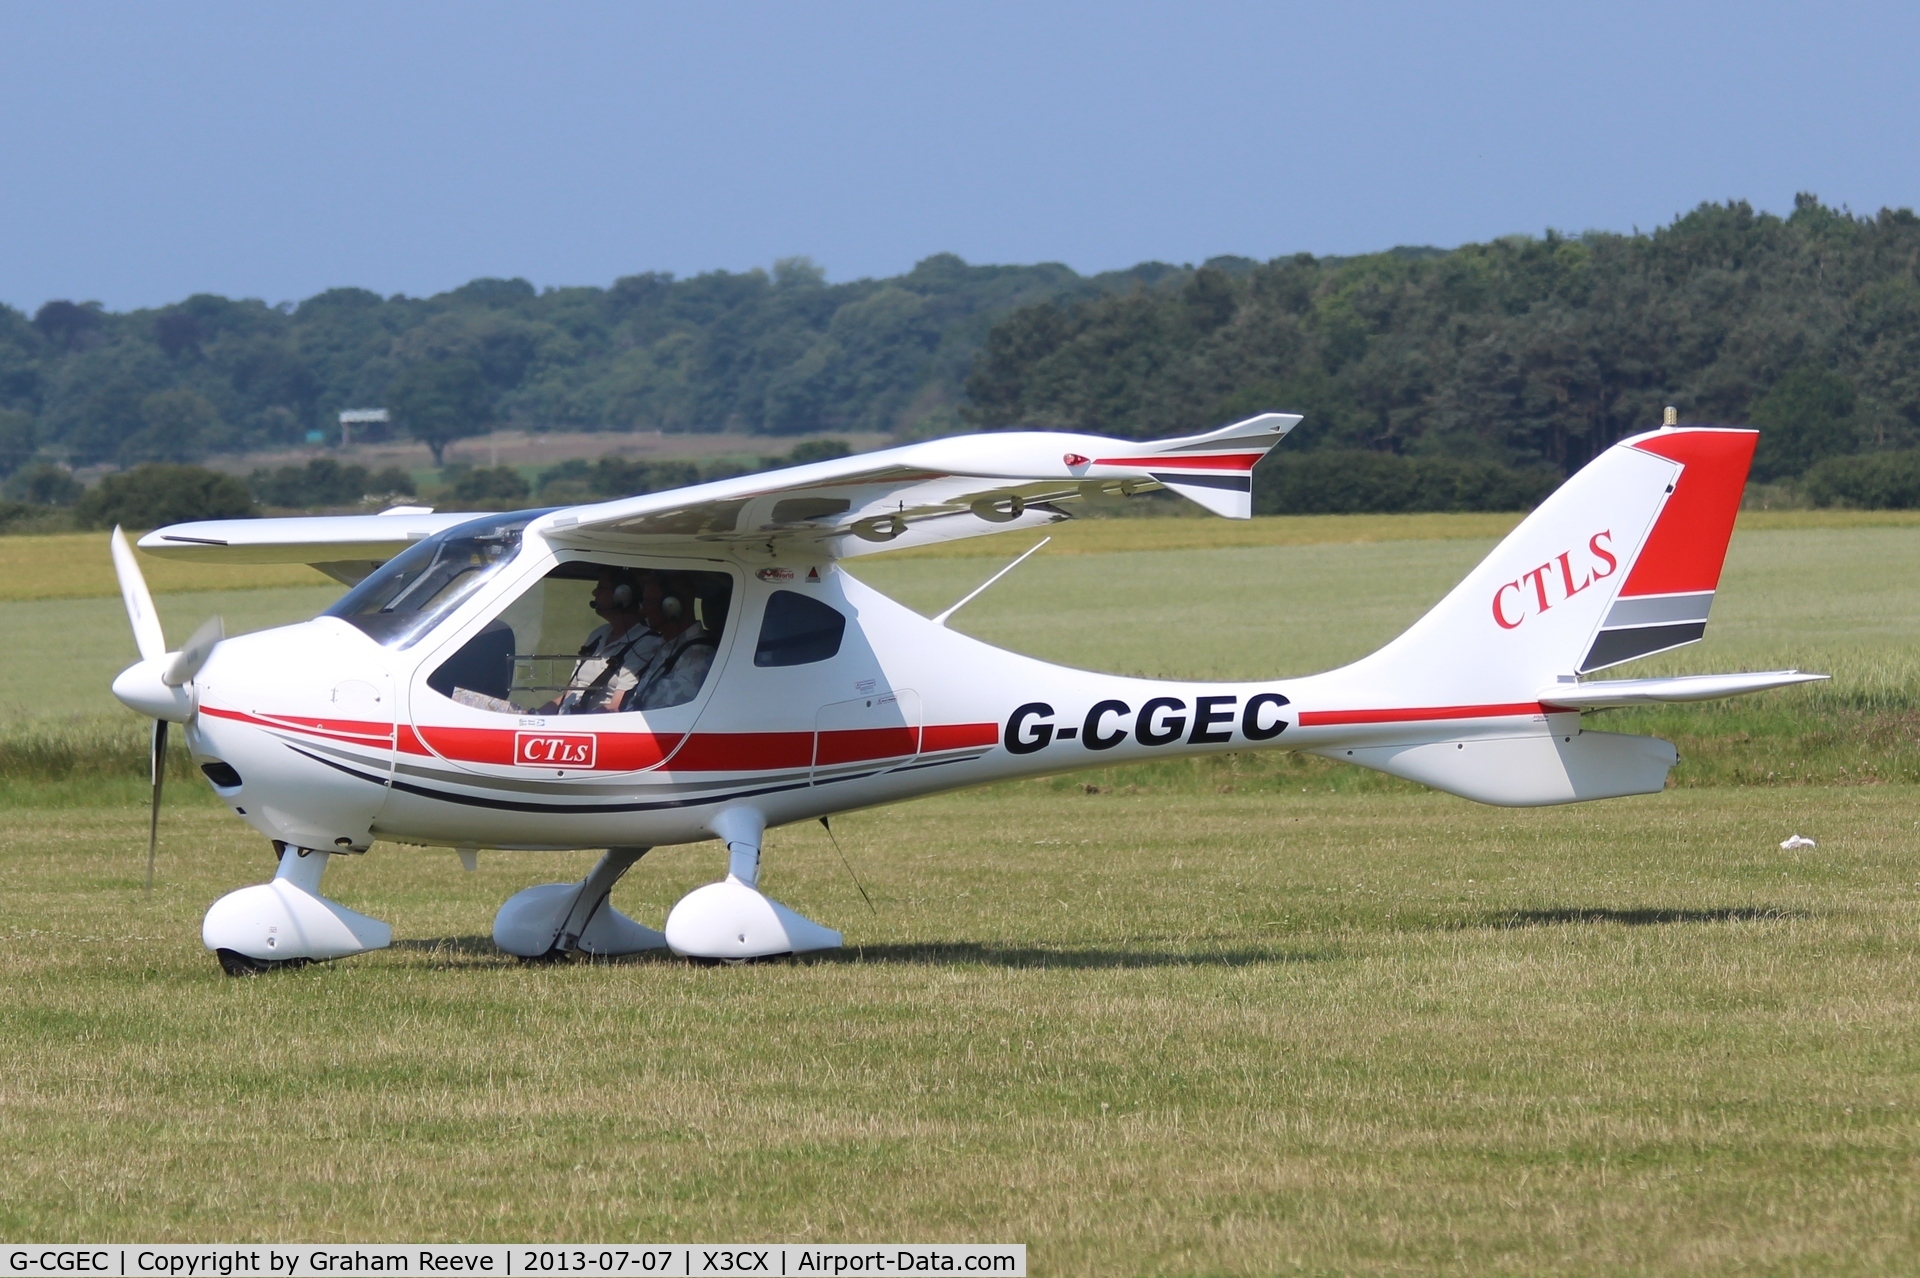 G-CGEC, 2009 Flight Design CTLS C/N F-09-02-12, Just landed at Northrepps.